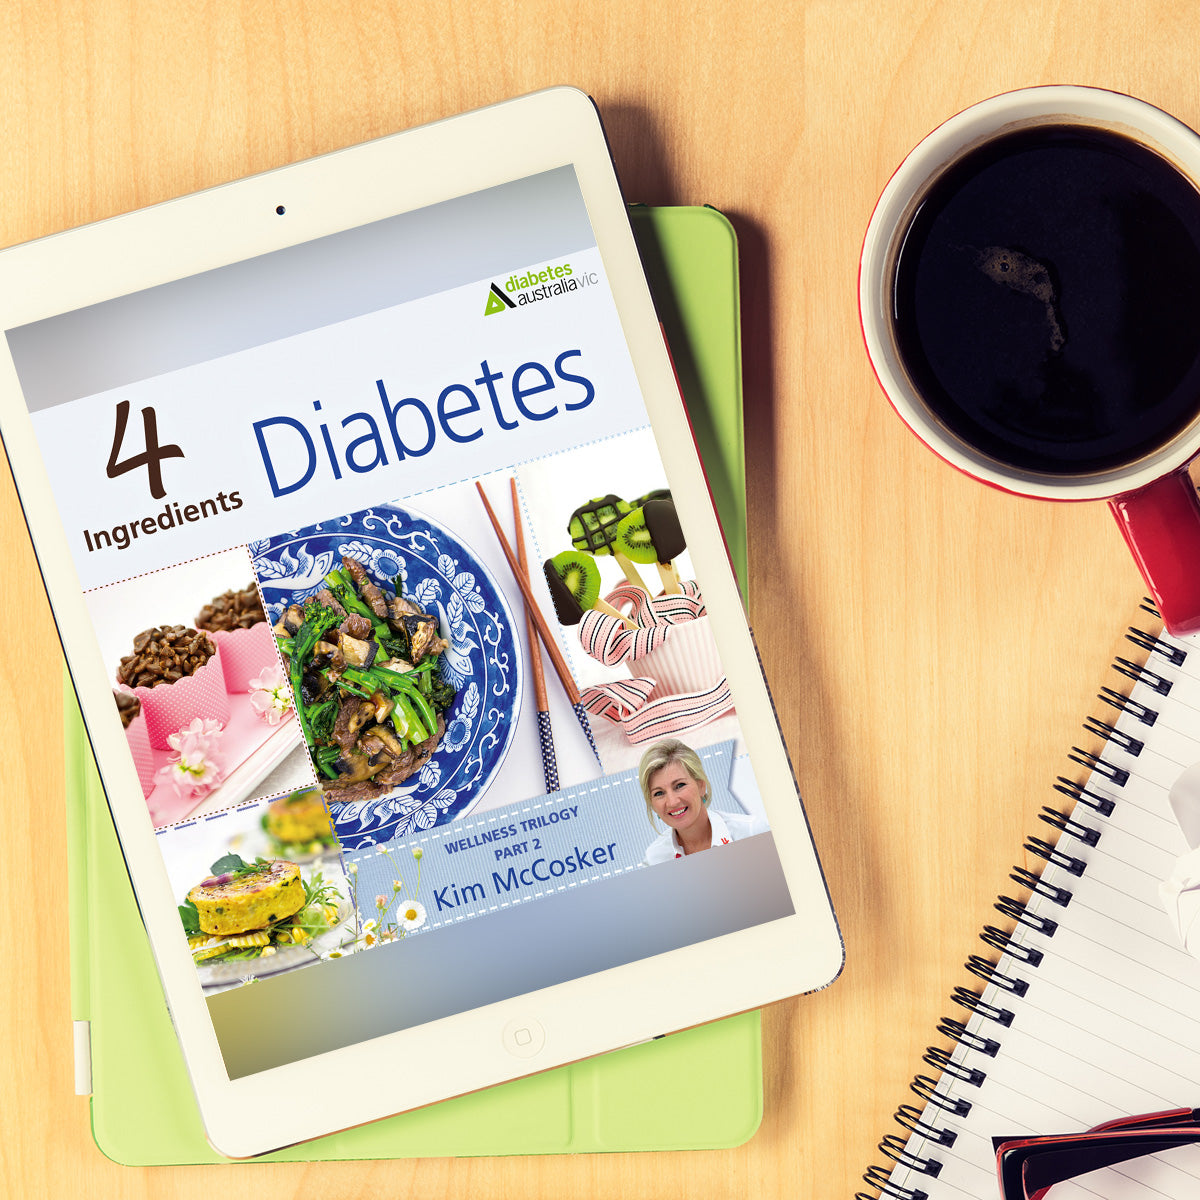 4 Ingredients Diabetes (Digital eBook)